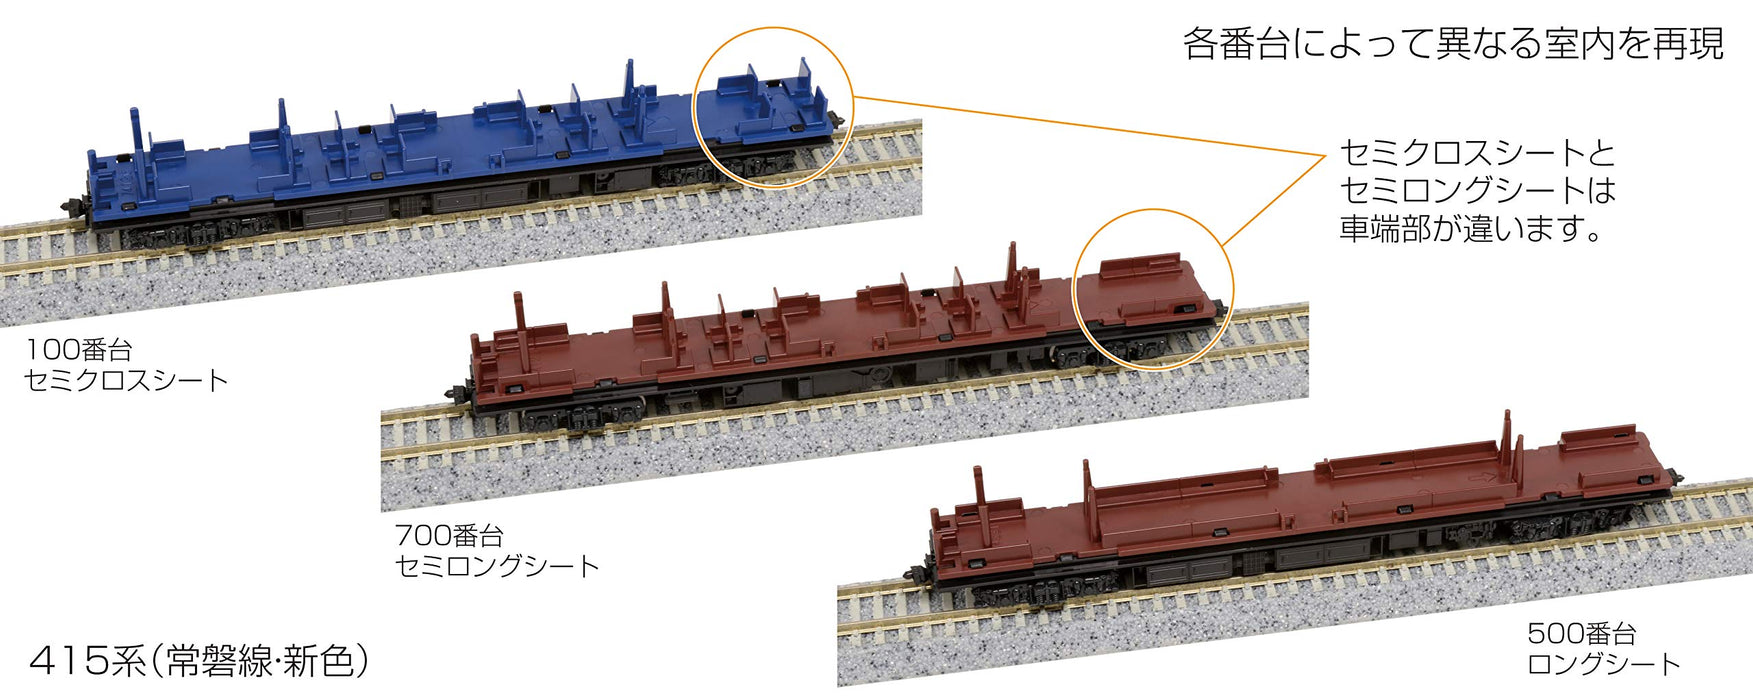 Kato Joban Line 4-Car Set - N Gauge 10-1536 New Color Model Train